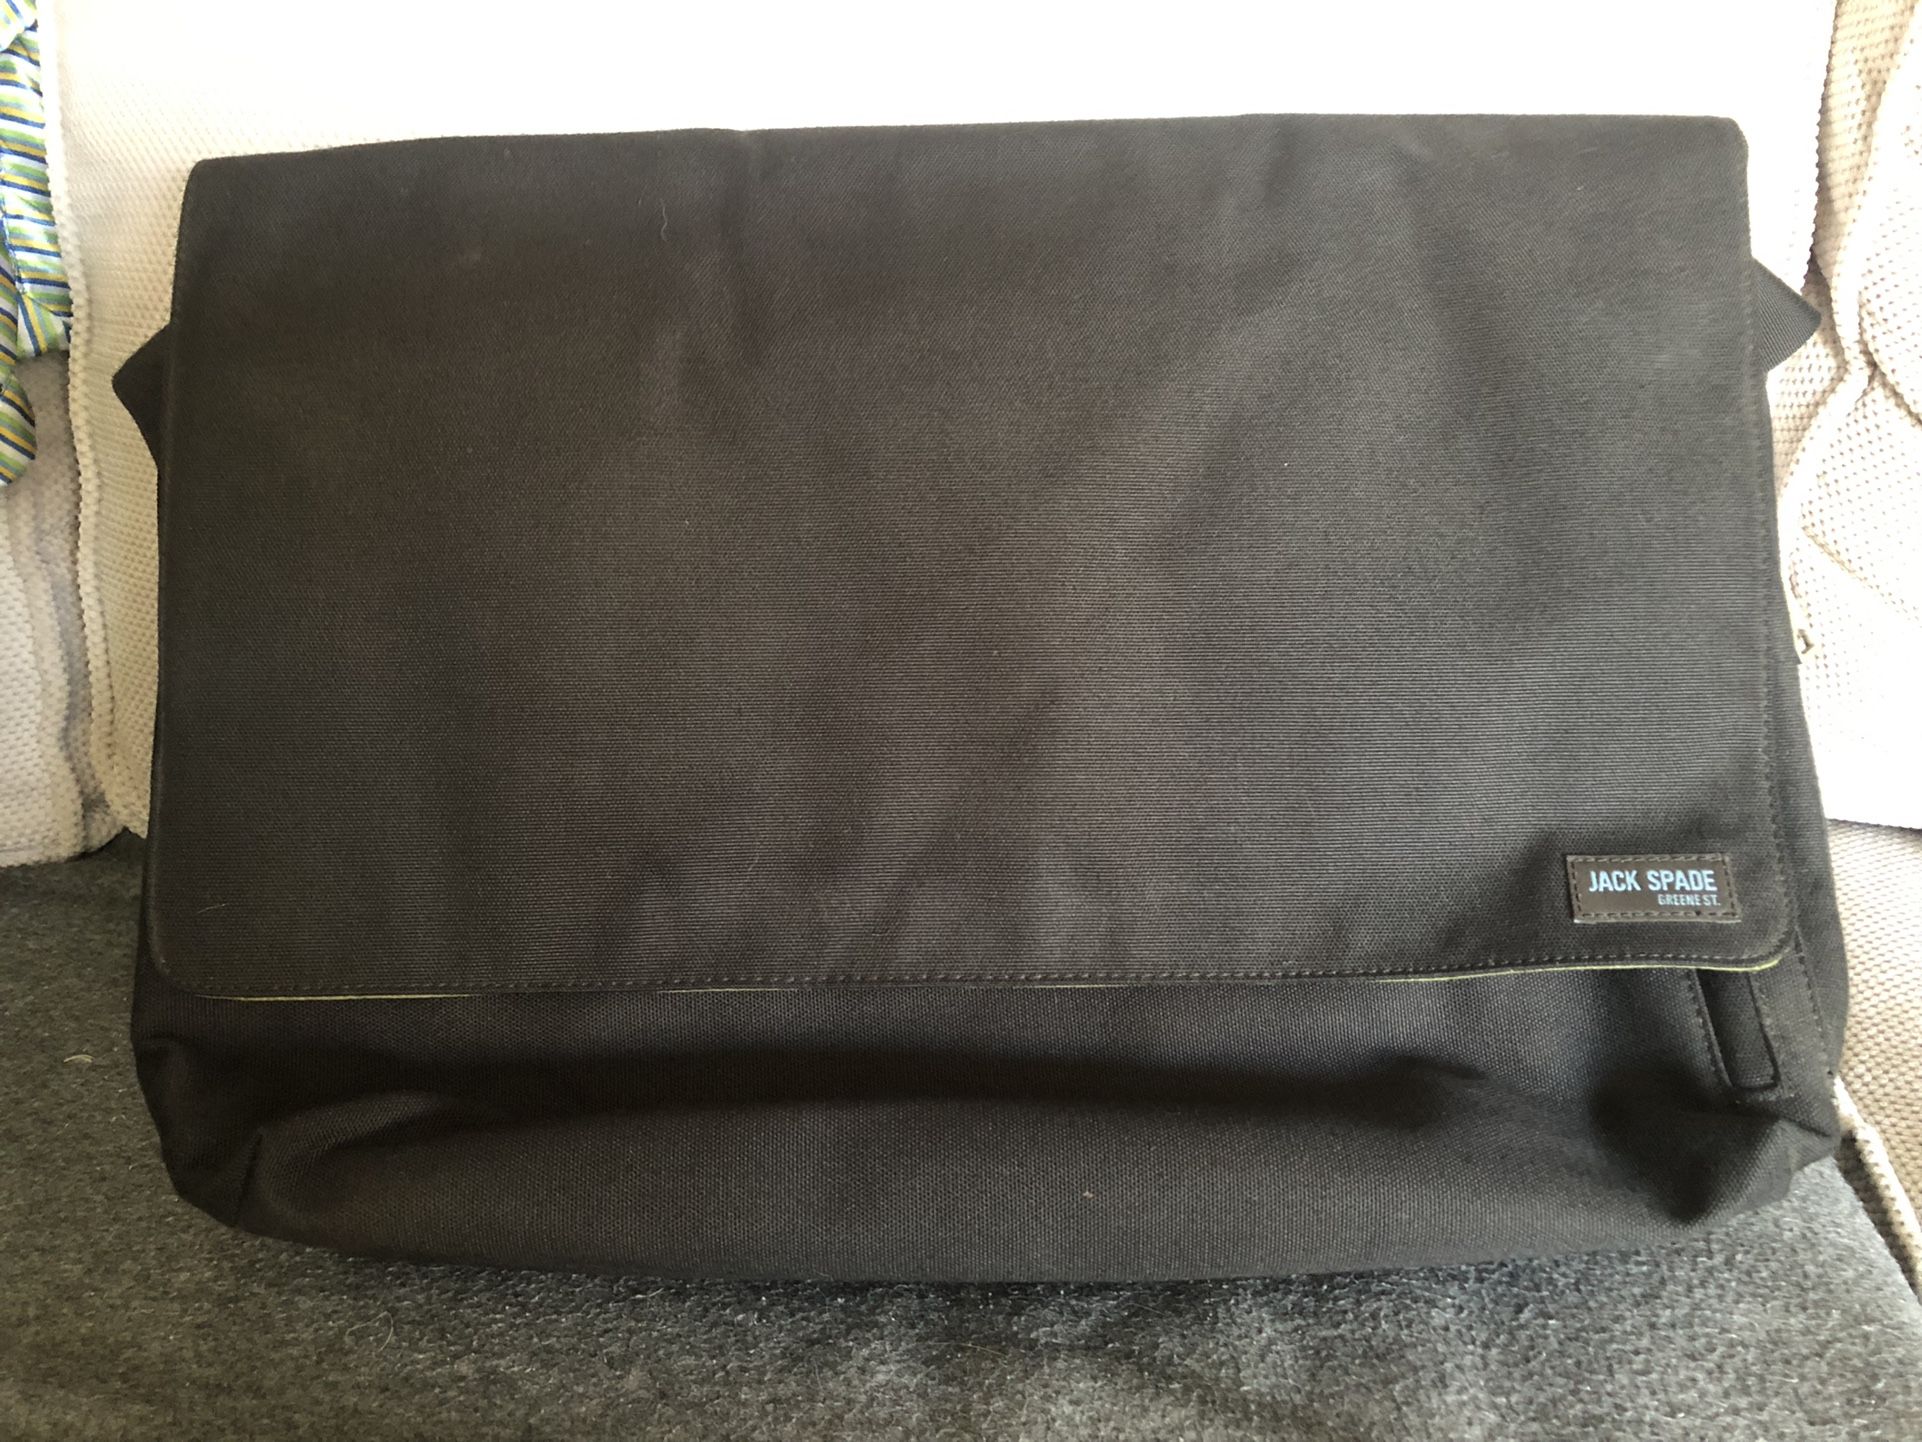 Jack Spade Messenger Bag With Laptop Sleeve